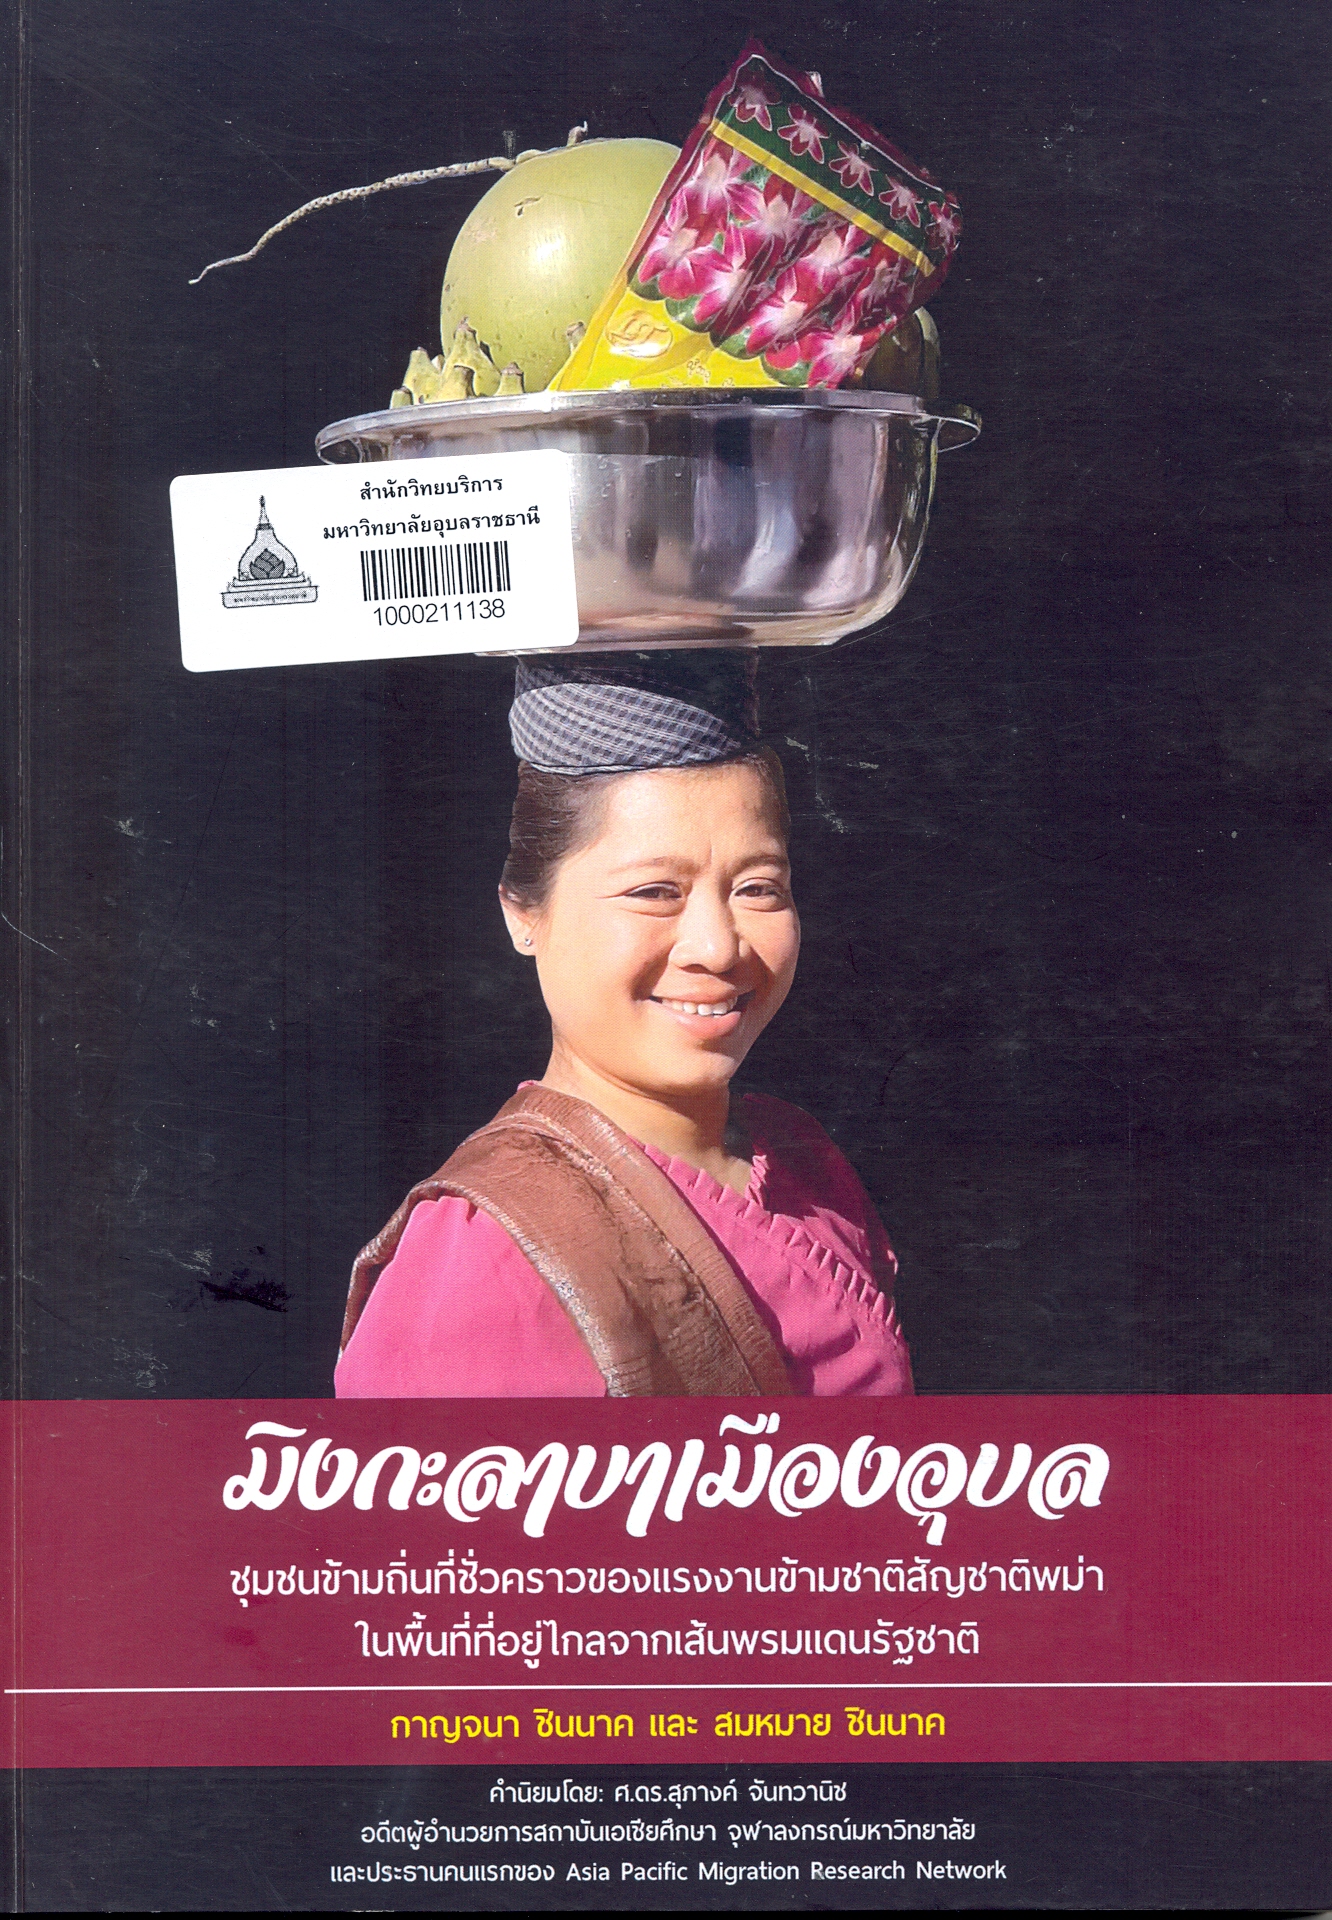 มิงกะลาบาเมืองอุบล : ชุมชนข้ามถิ่นที่ชั่วคราวของแรงงานข้ามชาติสัญชาติพม่าในพื้นที่ที่อยู่ไกลจากเส้นพรมแดนรัฐชาติ